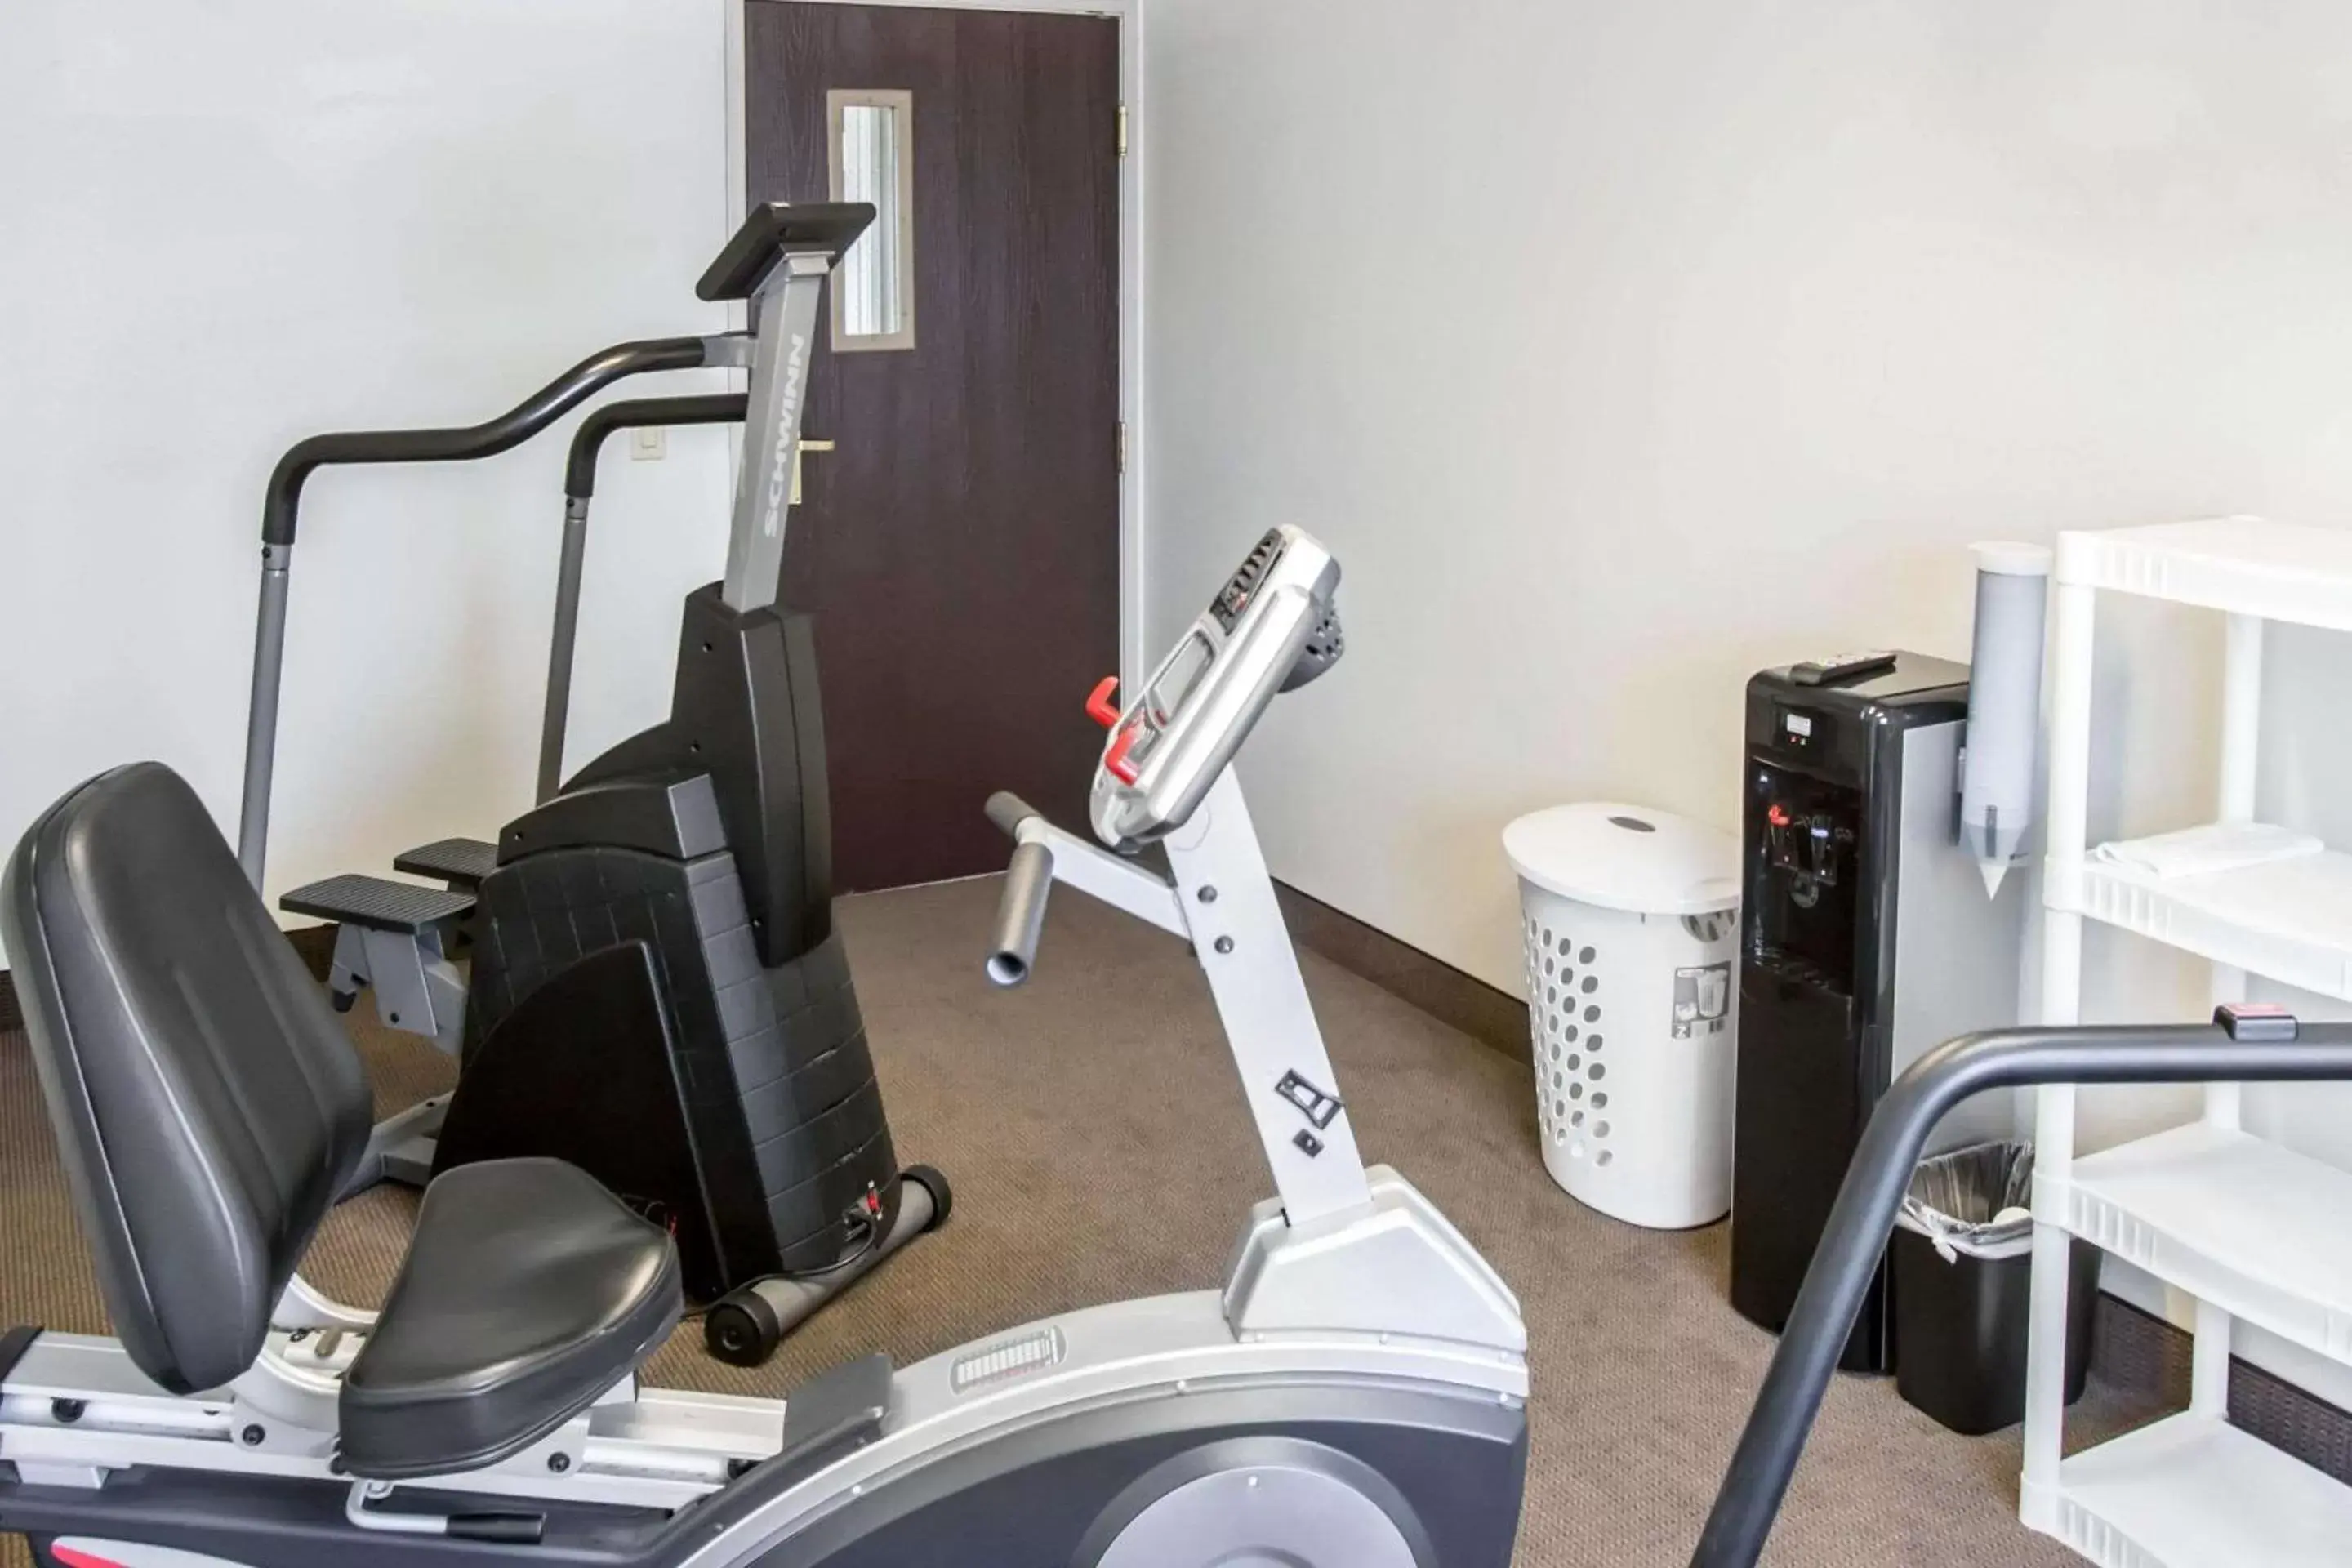 Fitness centre/facilities, Fitness Center/Facilities in Sleep Inn Rockford I-90